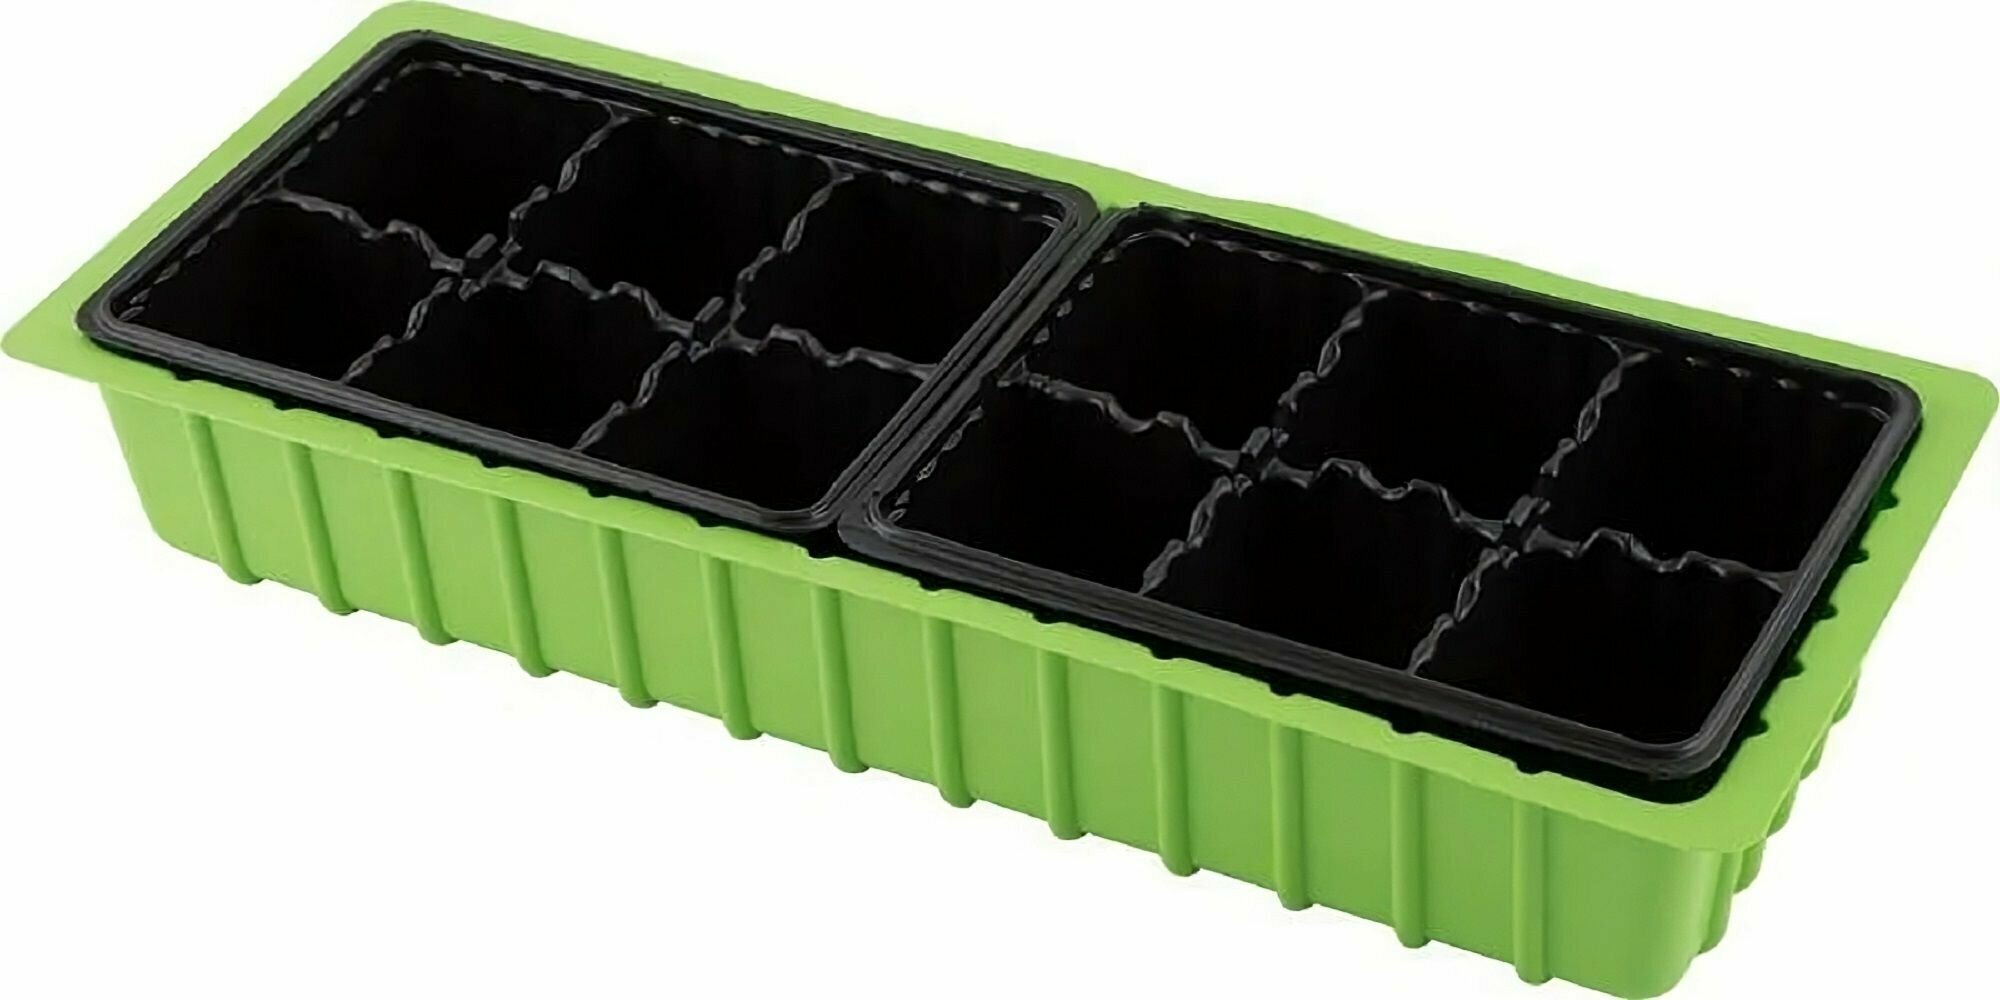 Мини-парник с крышкой, 6 шт, 39х16х5.5 см, 2 кассеты по 6 ячеек, набор для рассады также рассчитан на постоянное содержание кактусов и микрозелени